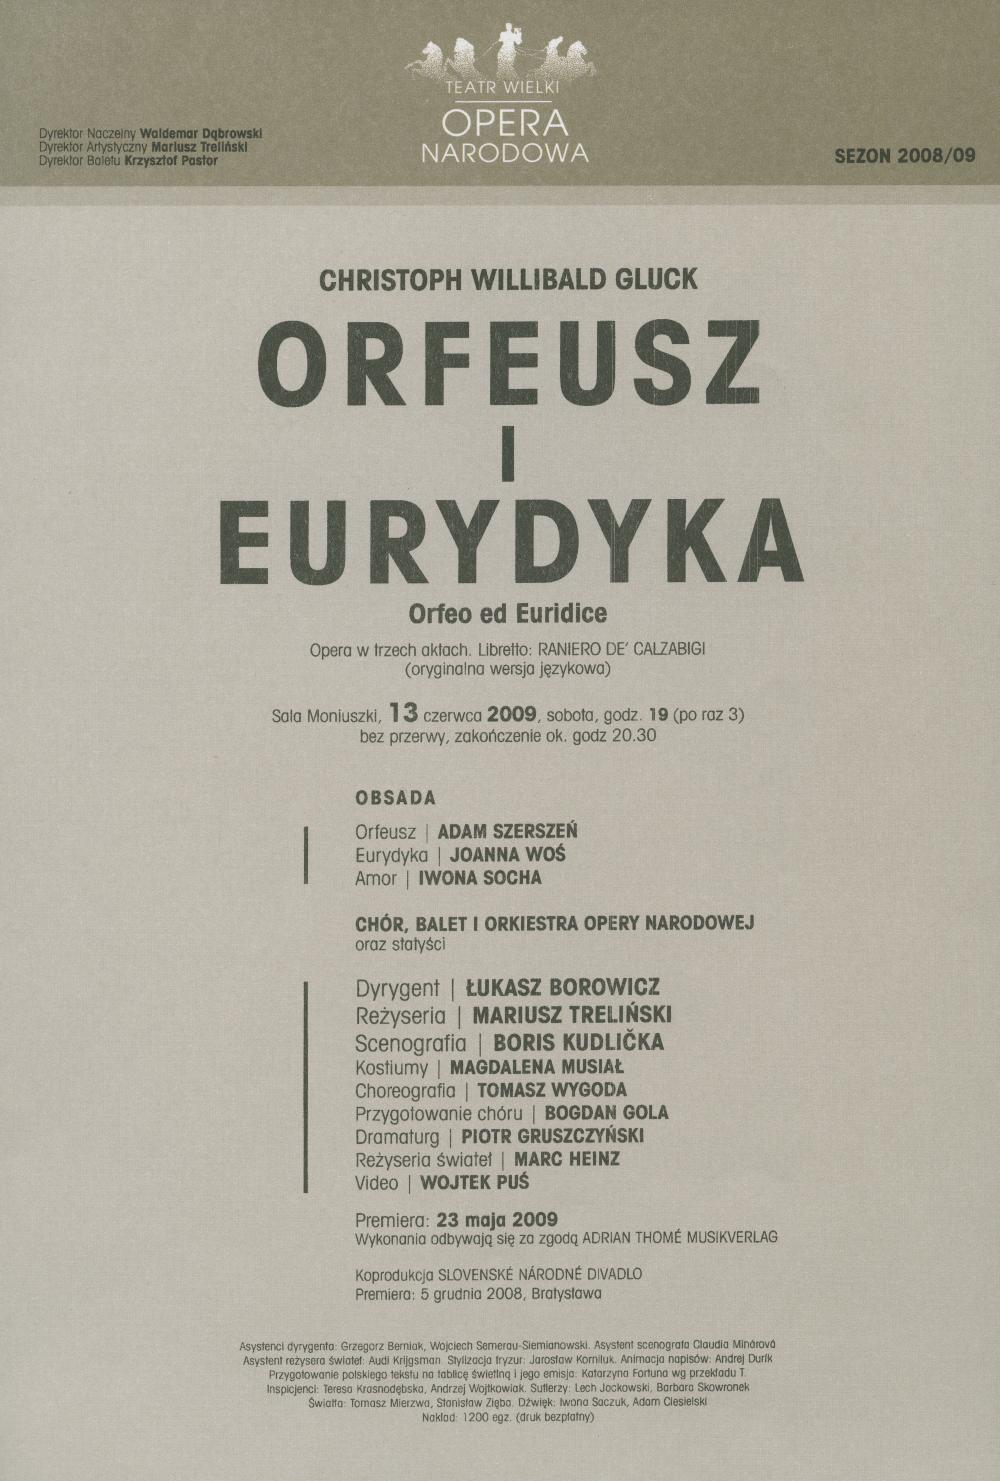 Wkładka obsadowa „Orfeusz i Eurydyka” Christoph Willibald Gluck 13-06-2009